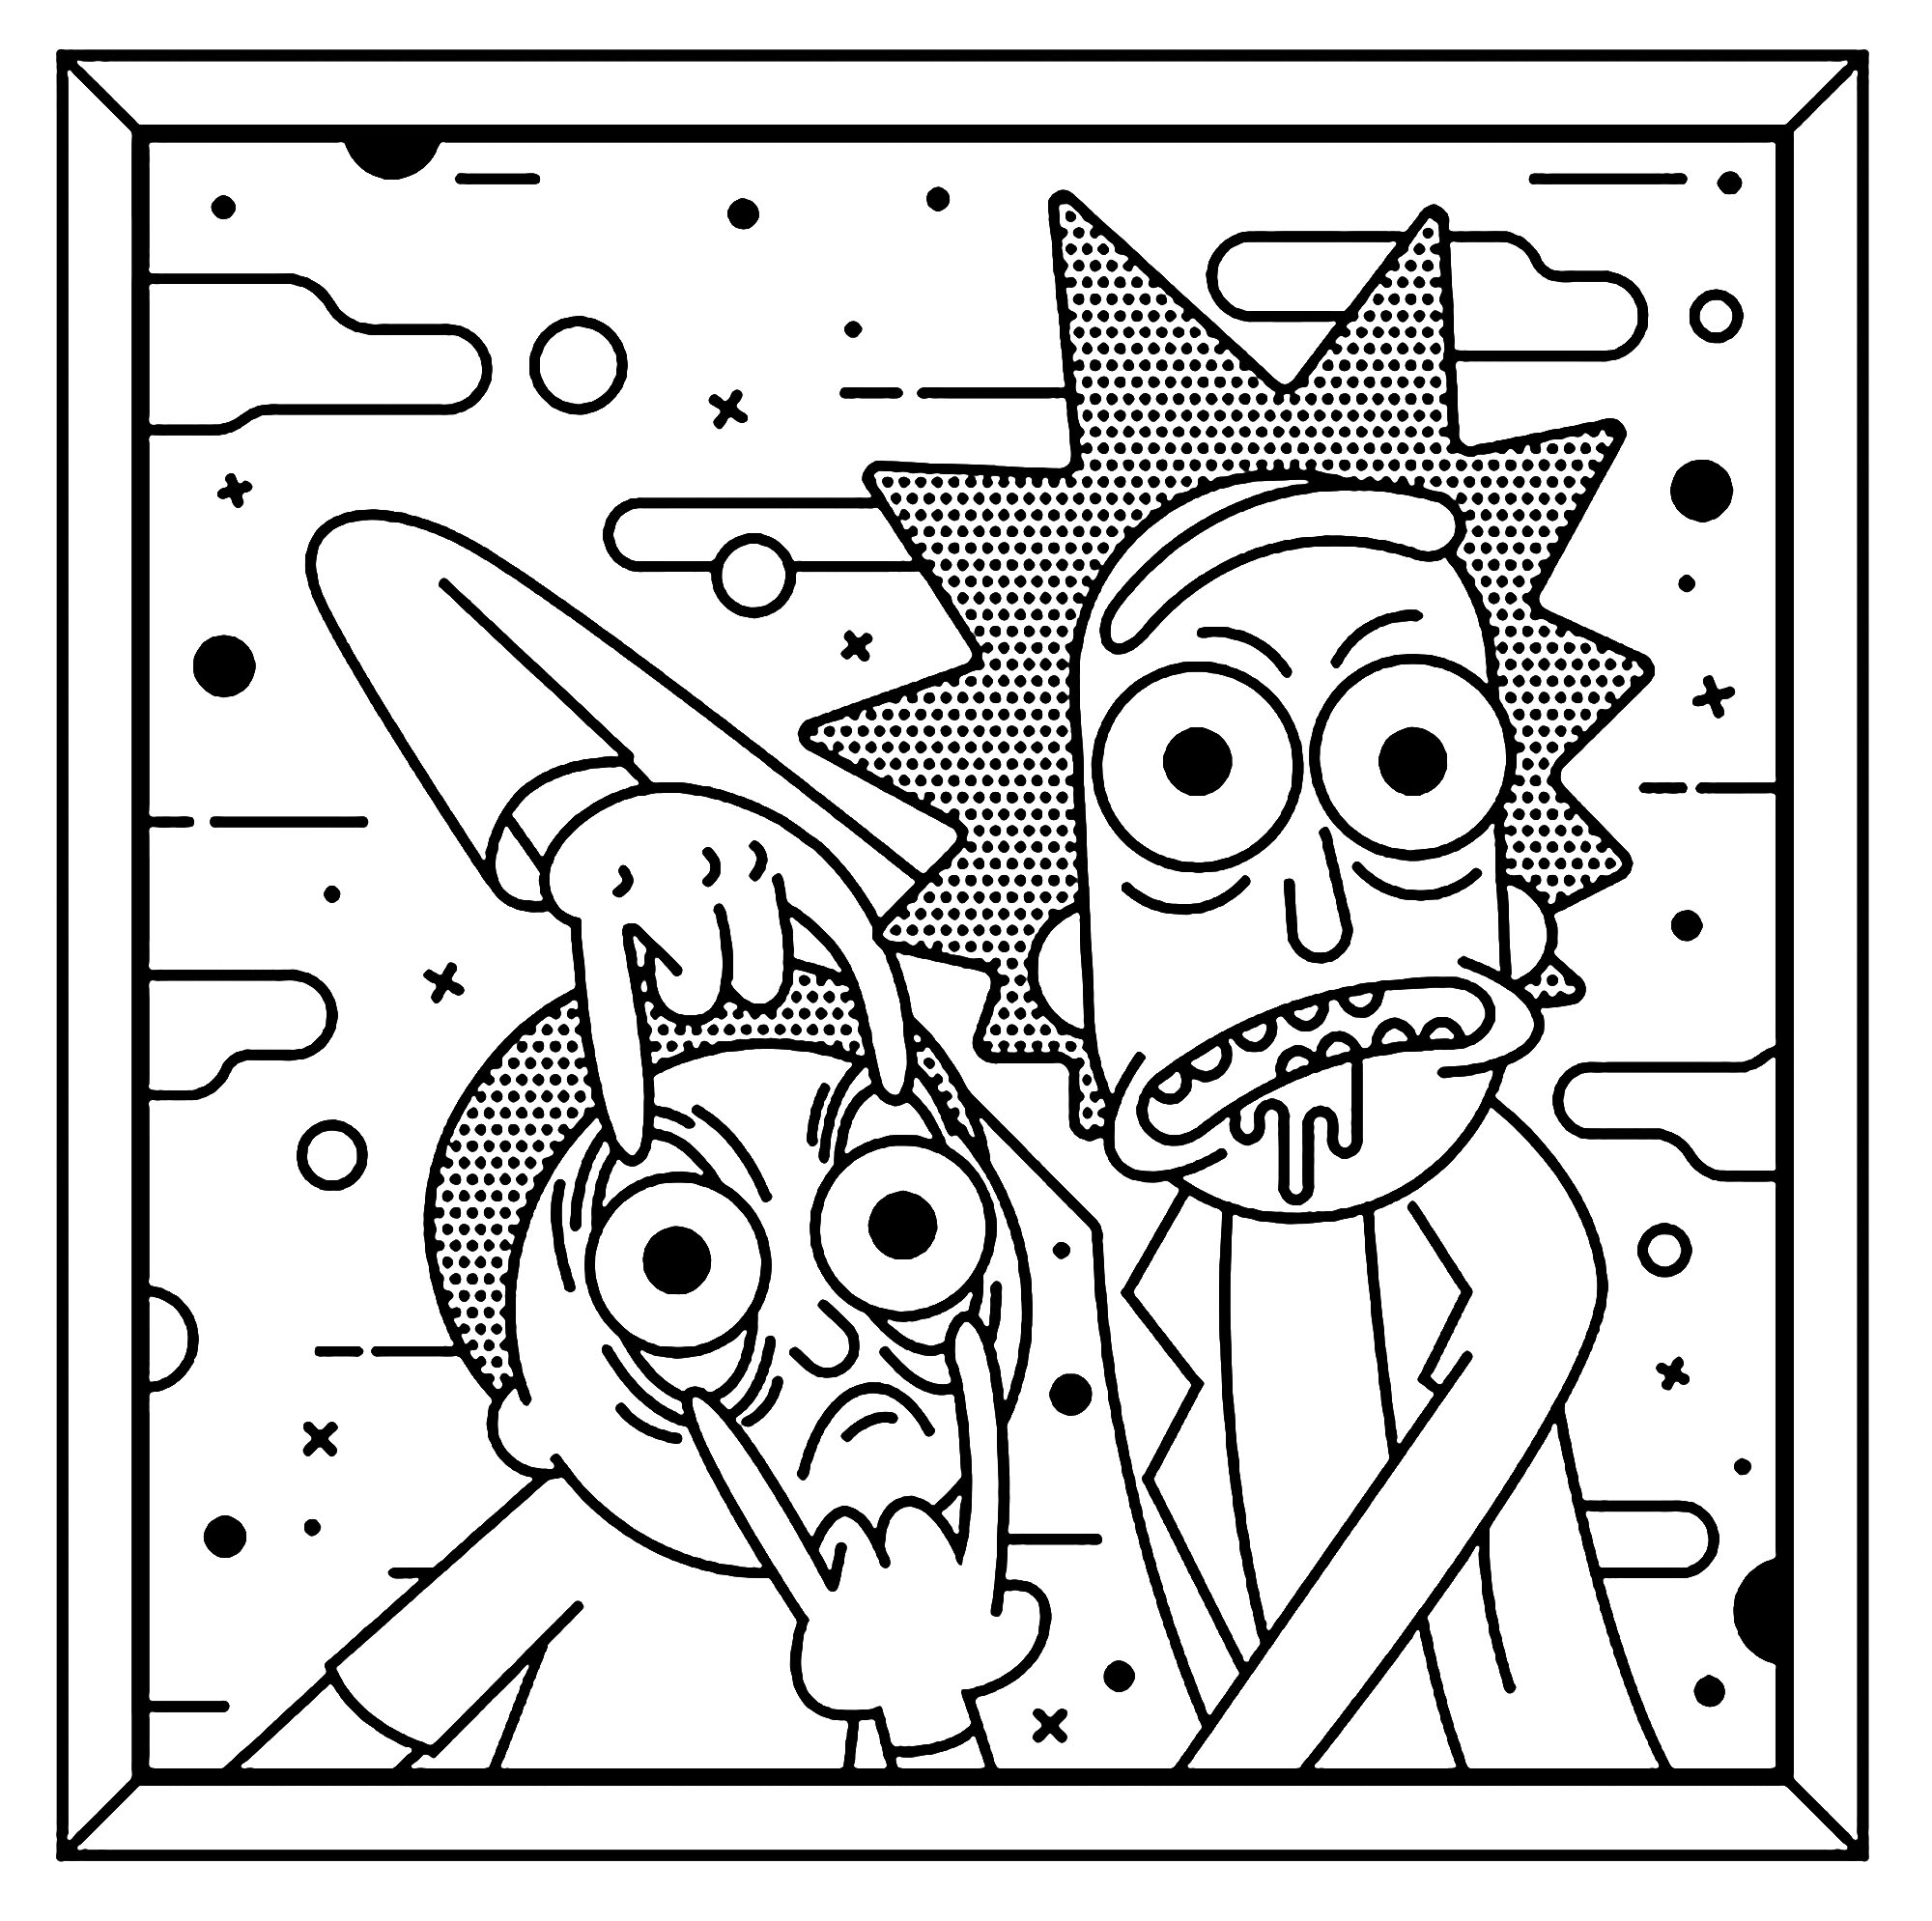 Mögen Sie Pop Art? die beiden Hauptfiguren, Rick und Morty, sind in einem sehr charakteristischen Roy Lichtenstein-Stil dargestellt.